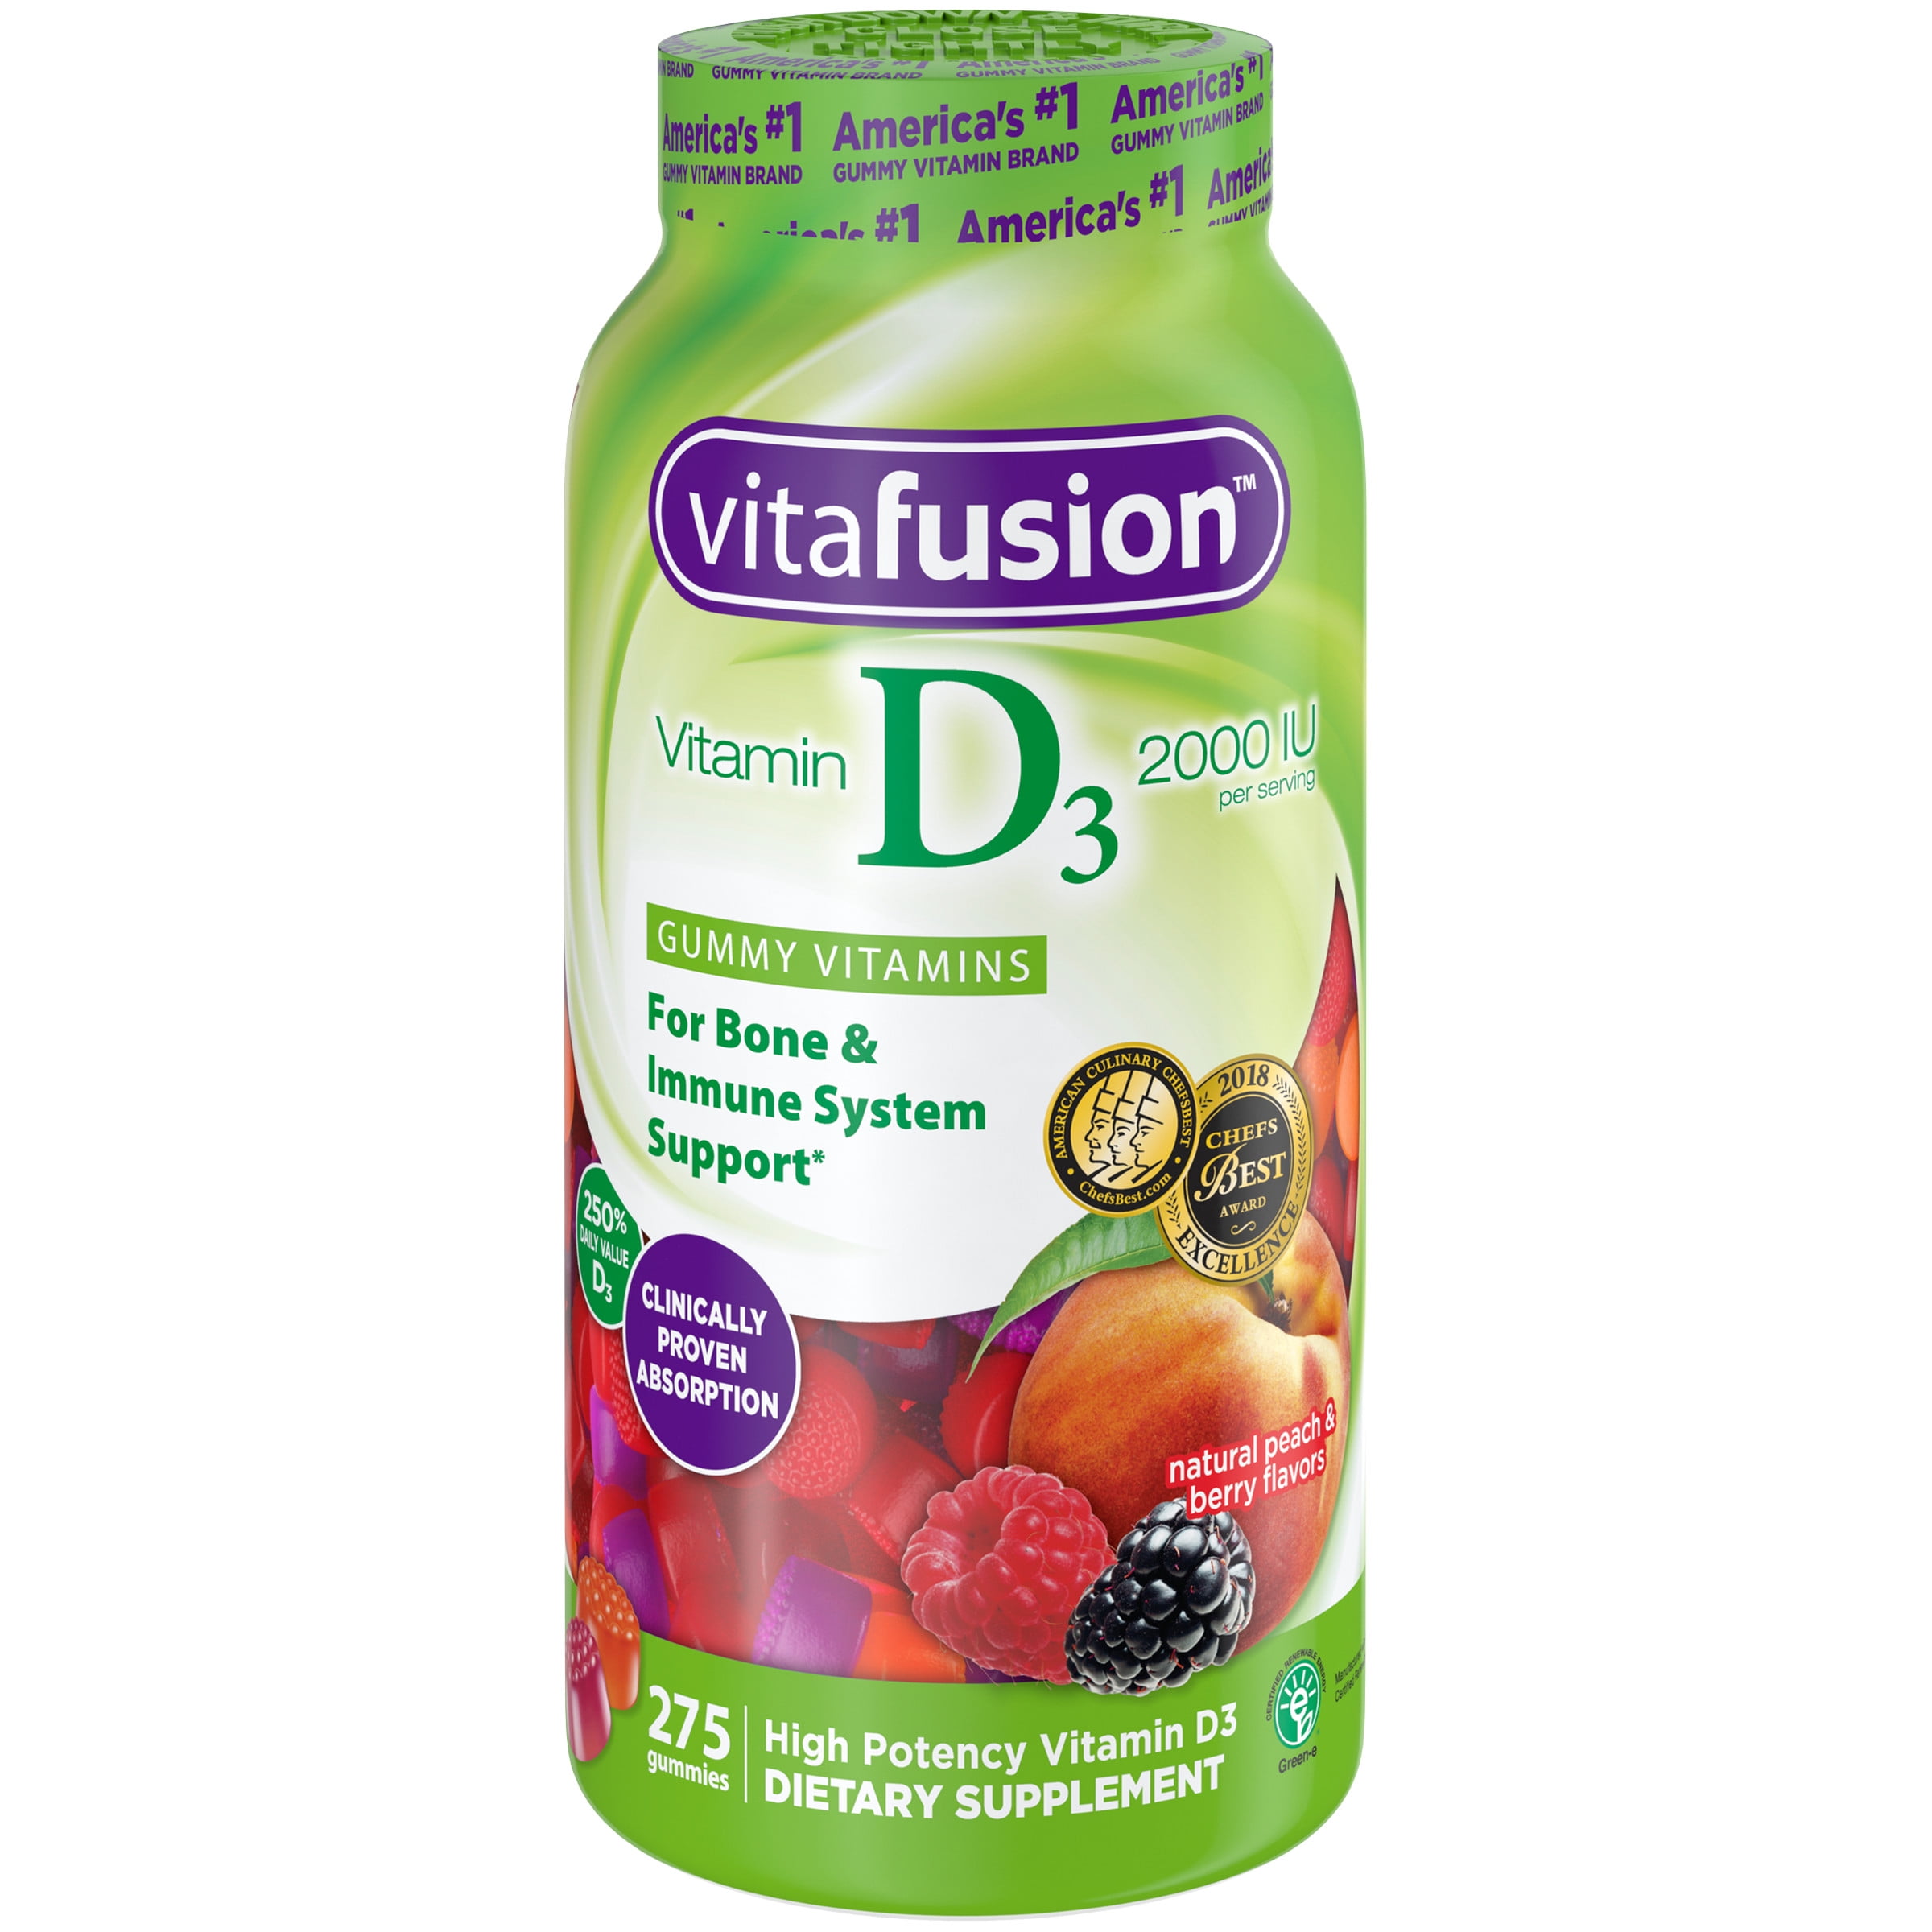 Vitafusion Vitamin D3 Gummy Vitamins, 275 ct - Walmart.com